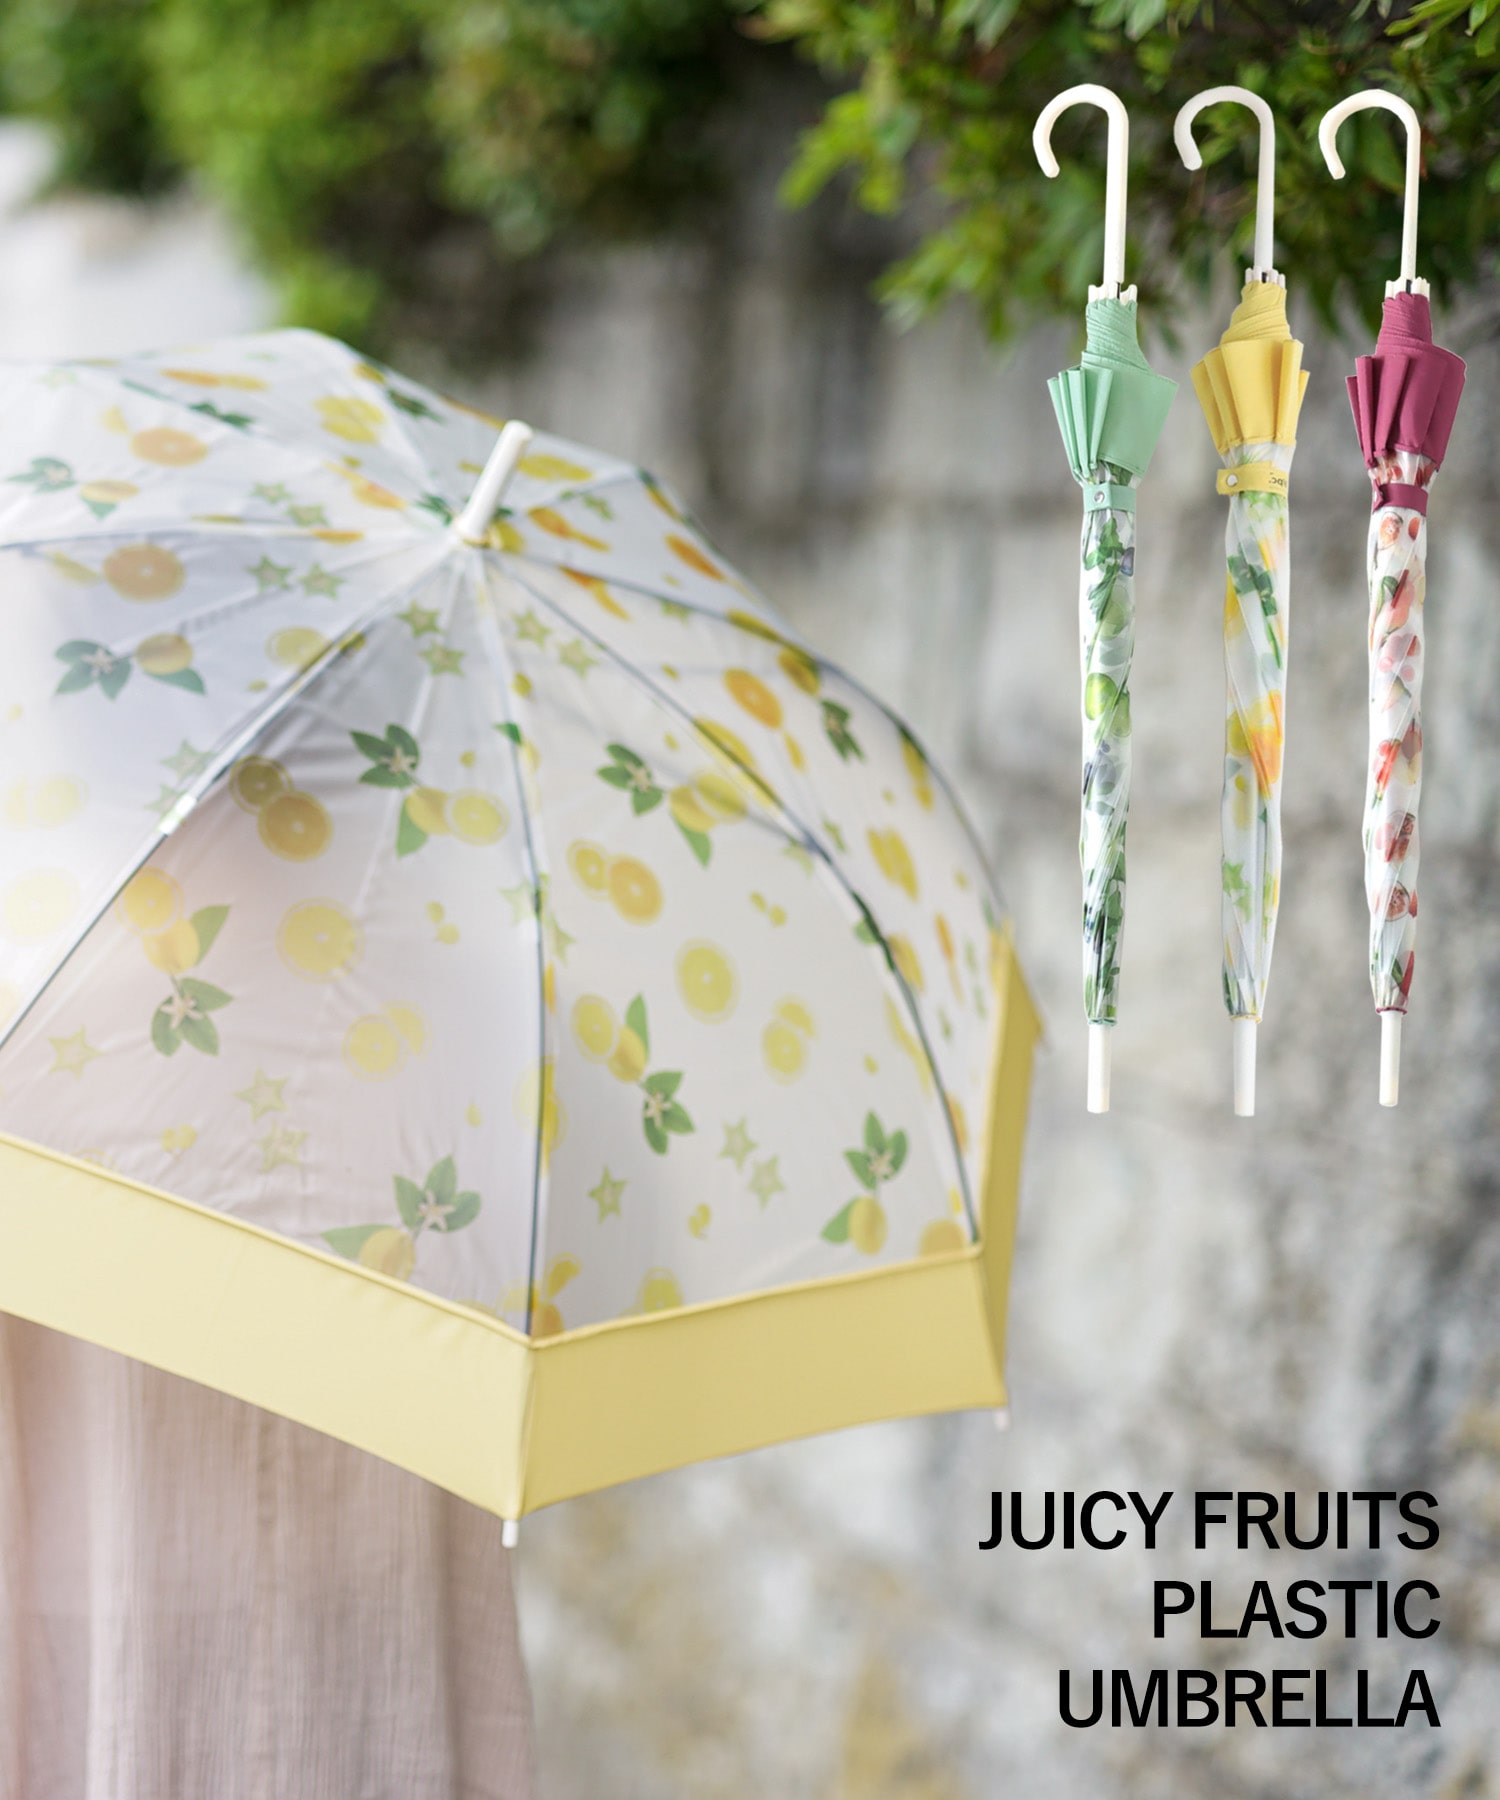 JUICY FRUITS UMBRELLAビニール傘